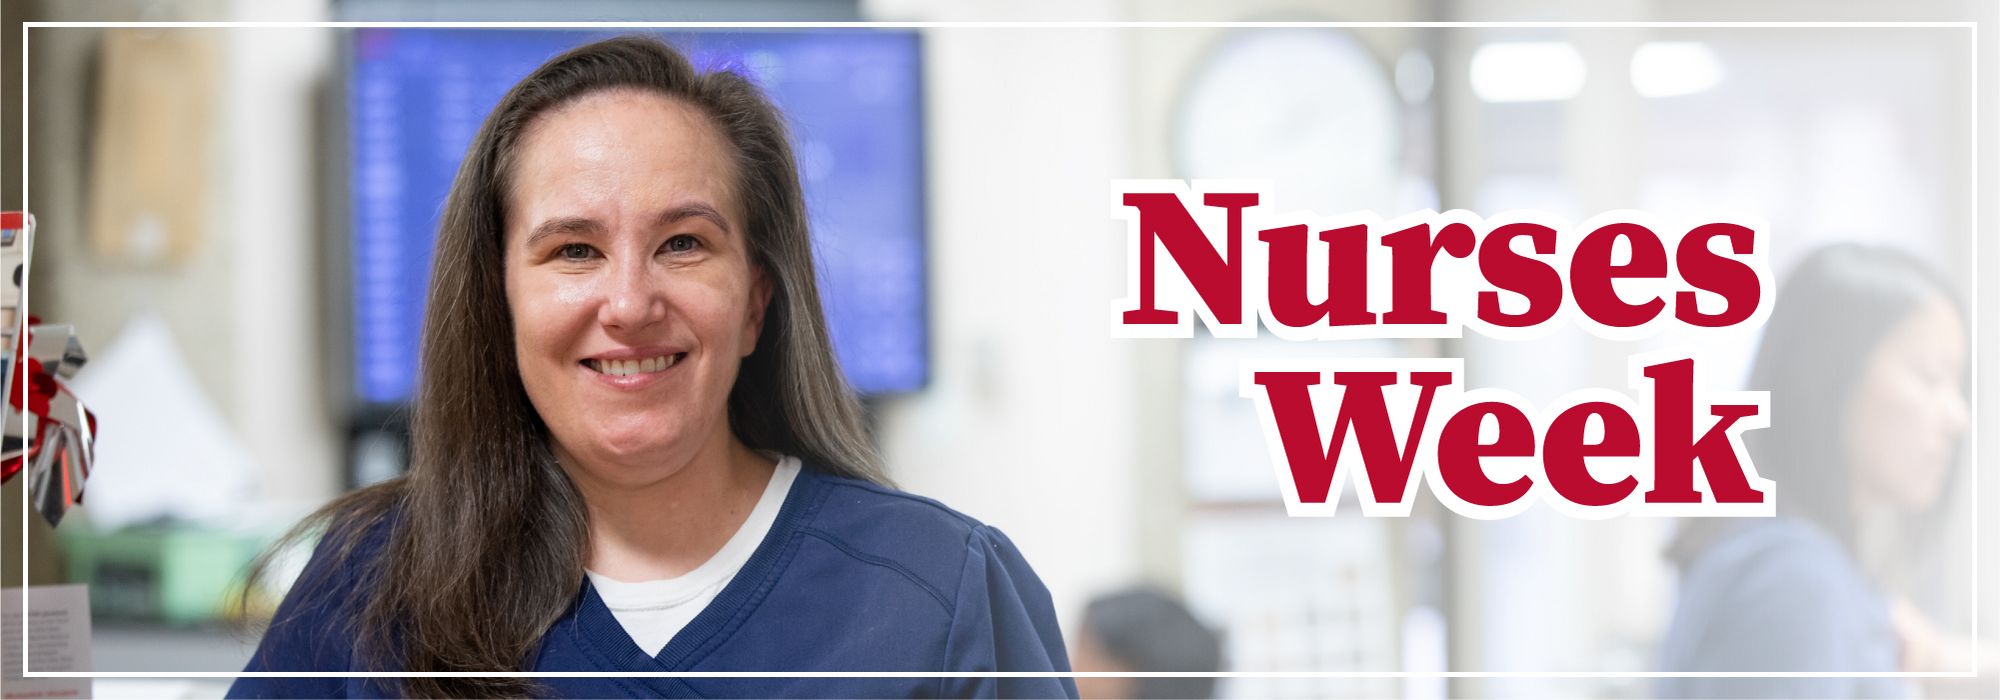 photo of nurse Maria Winner with words Nurses Week